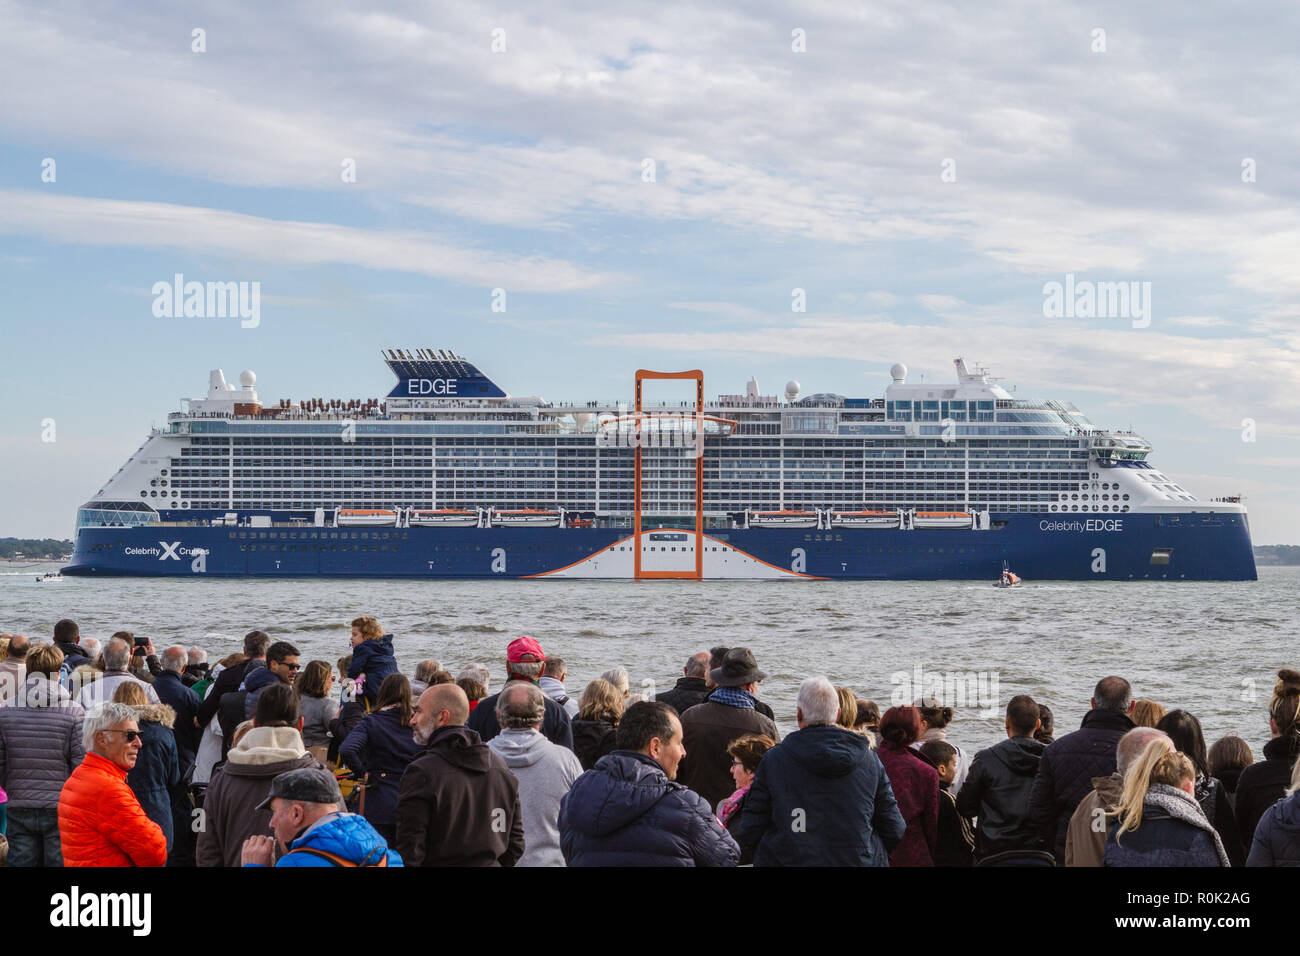 Celebrity Kante ist die erste Kante-Klasse von Celebrity Cruises Kreuzfahrtschiffe. Celebrity Edge betrieben wurde, bei der STX-Werft in Frankreich gebaut Stockfoto